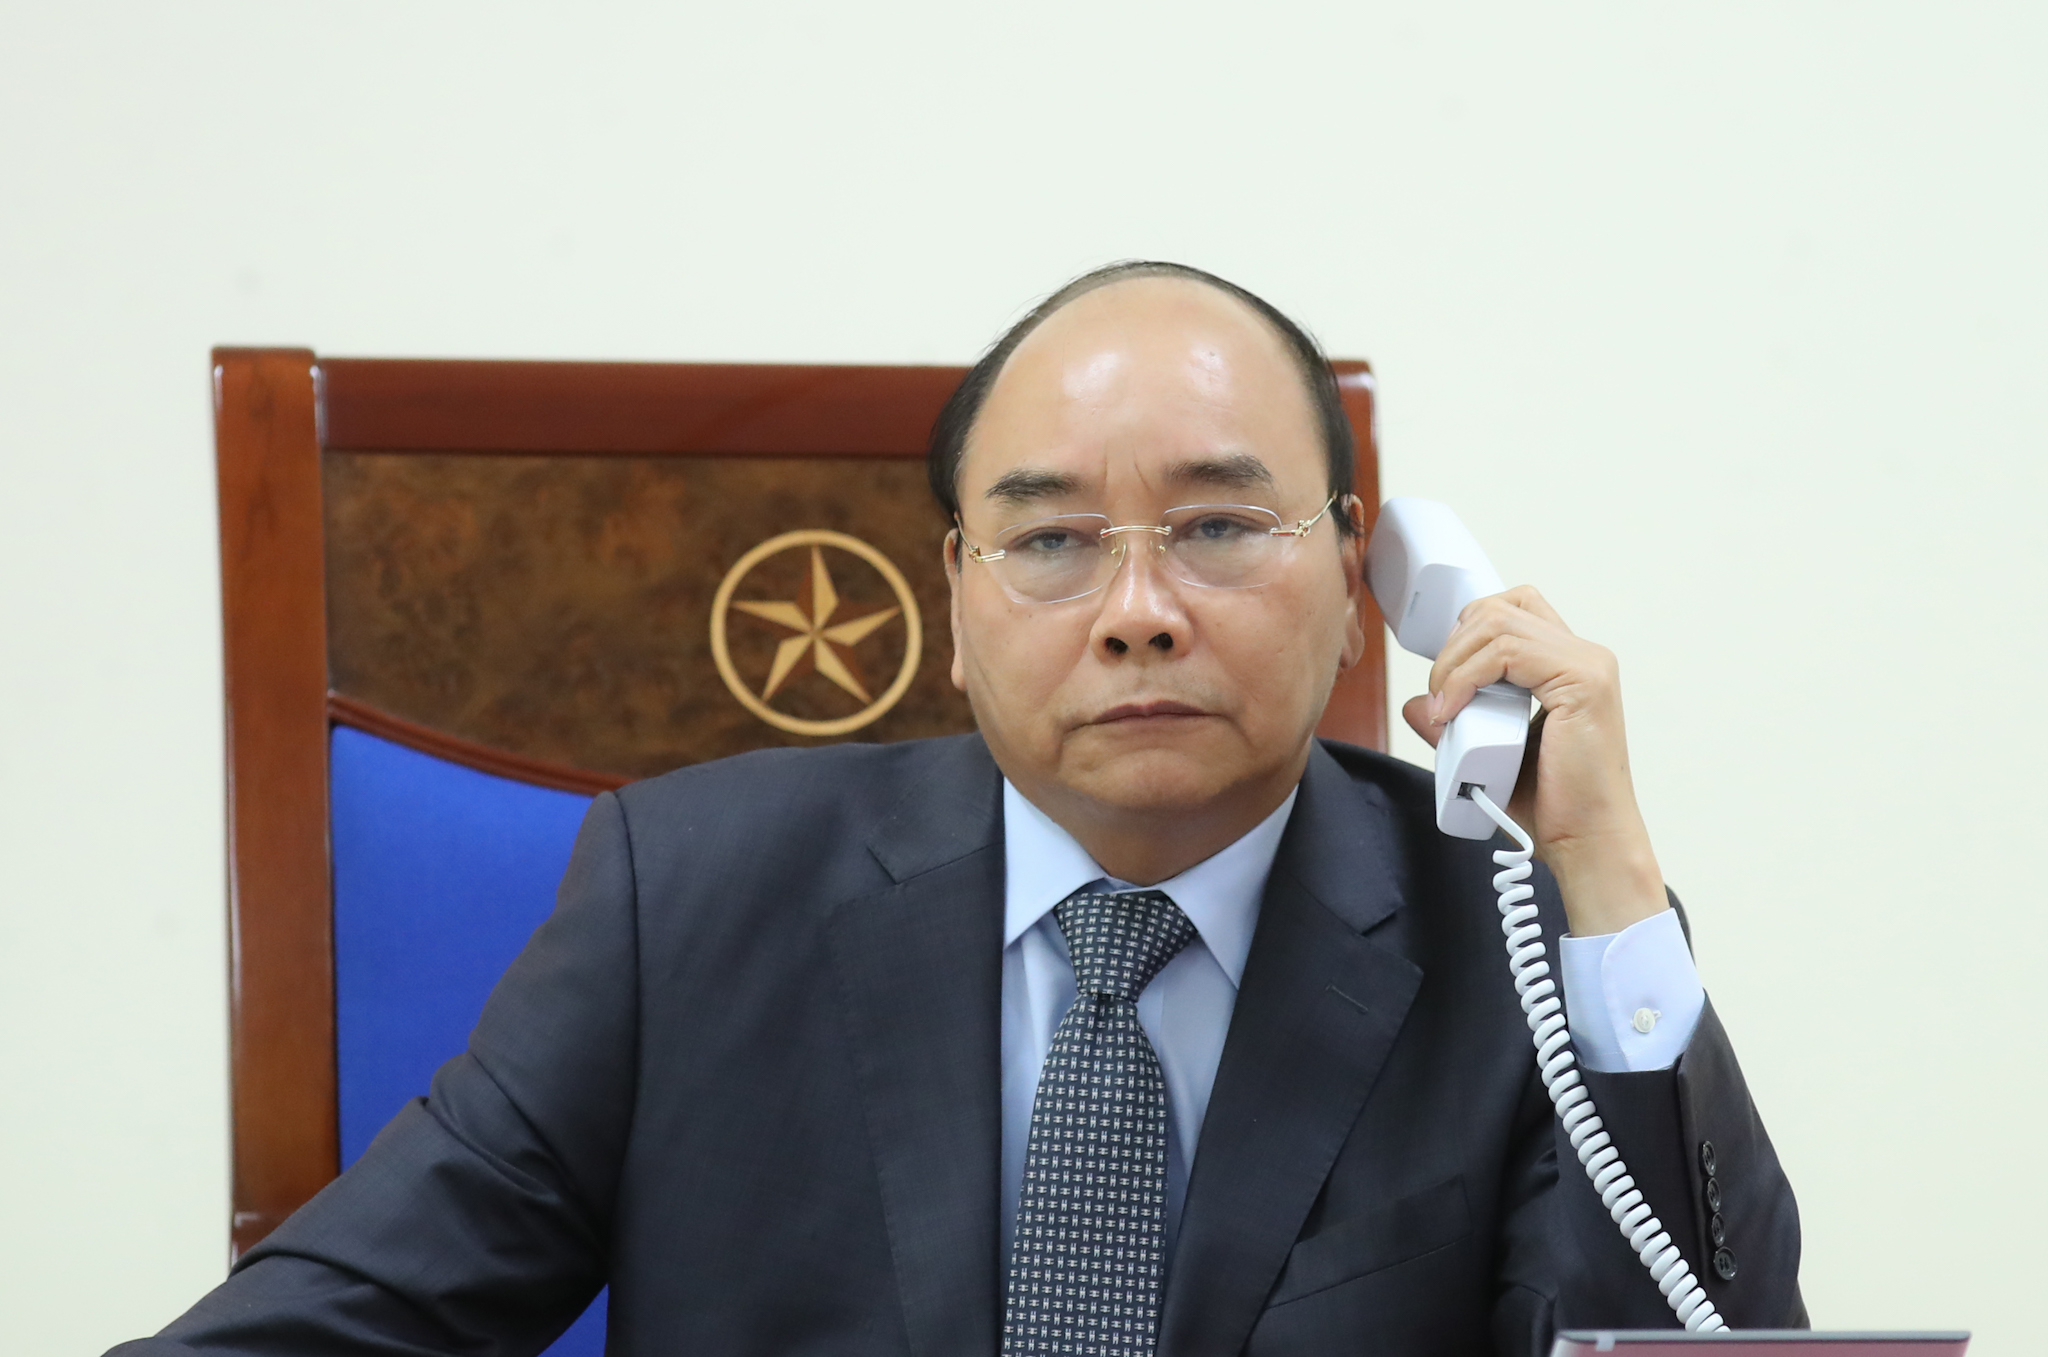 Thủ tướng Nguyễn Xuân Phúc điện đàm với Thủ tướng Lào Thongloun Sisoulith và Thủ tướng Campuchia Samdech Techo Hun Sen về ứng phó COVID-19. Ảnh: VGP